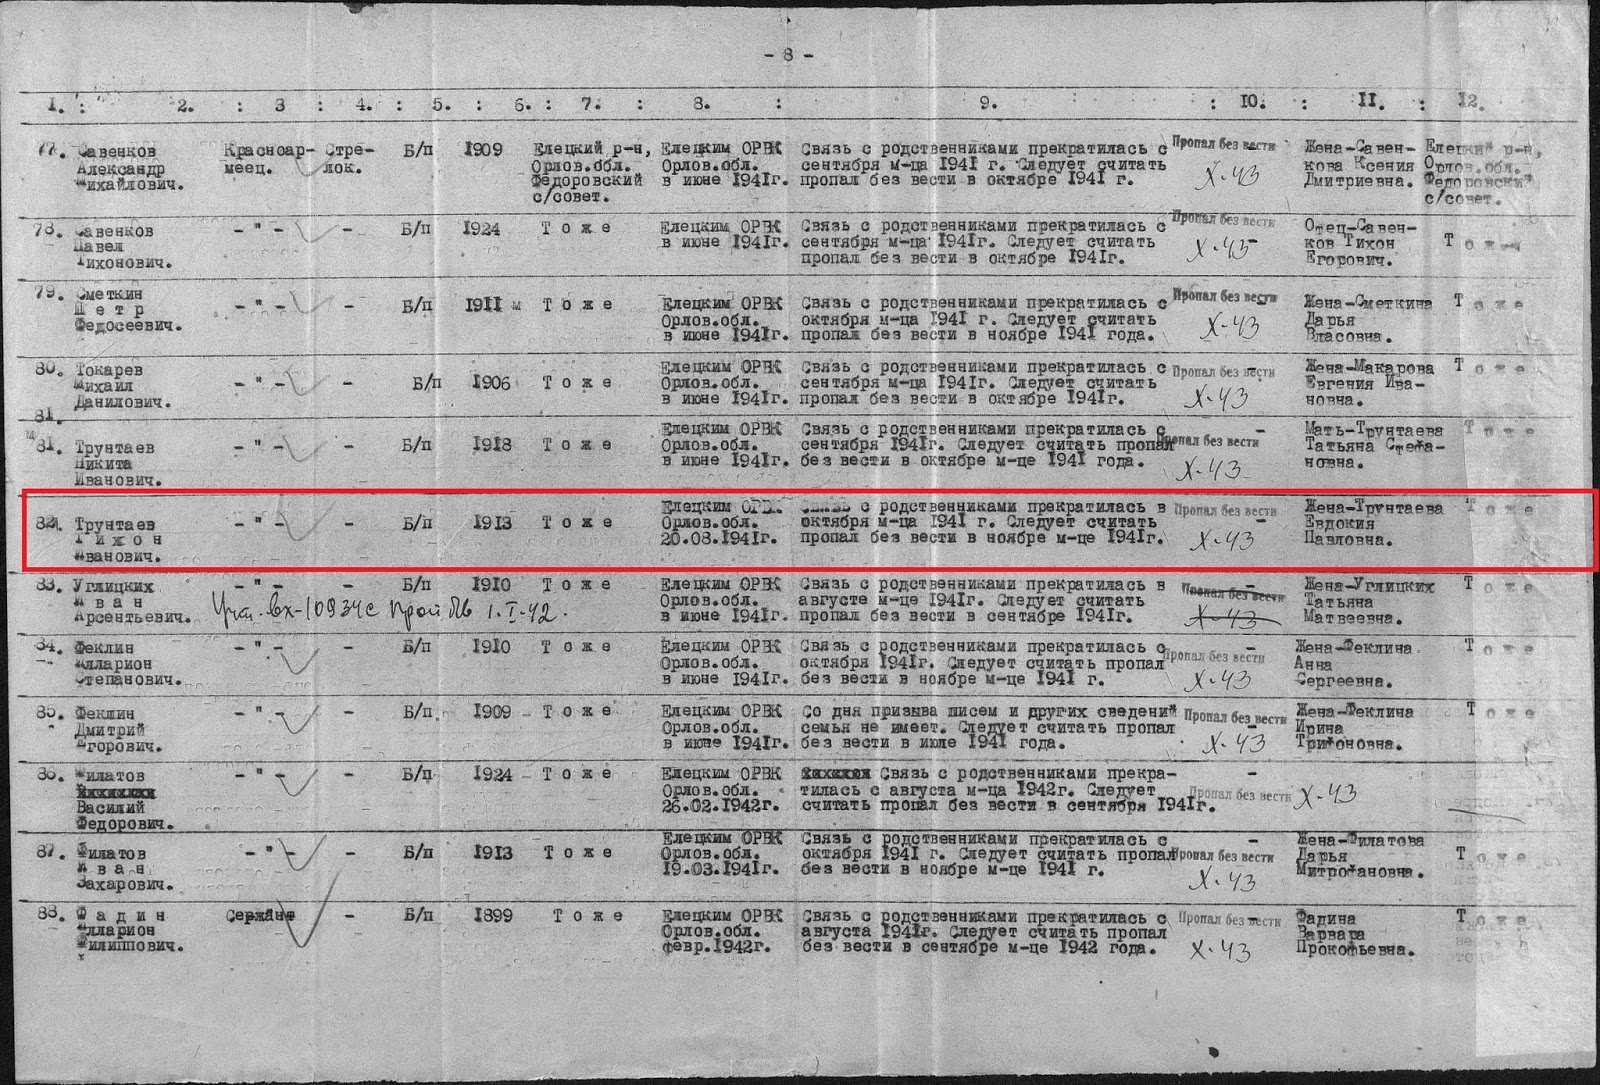 Списки пропавших безвести 1941г.